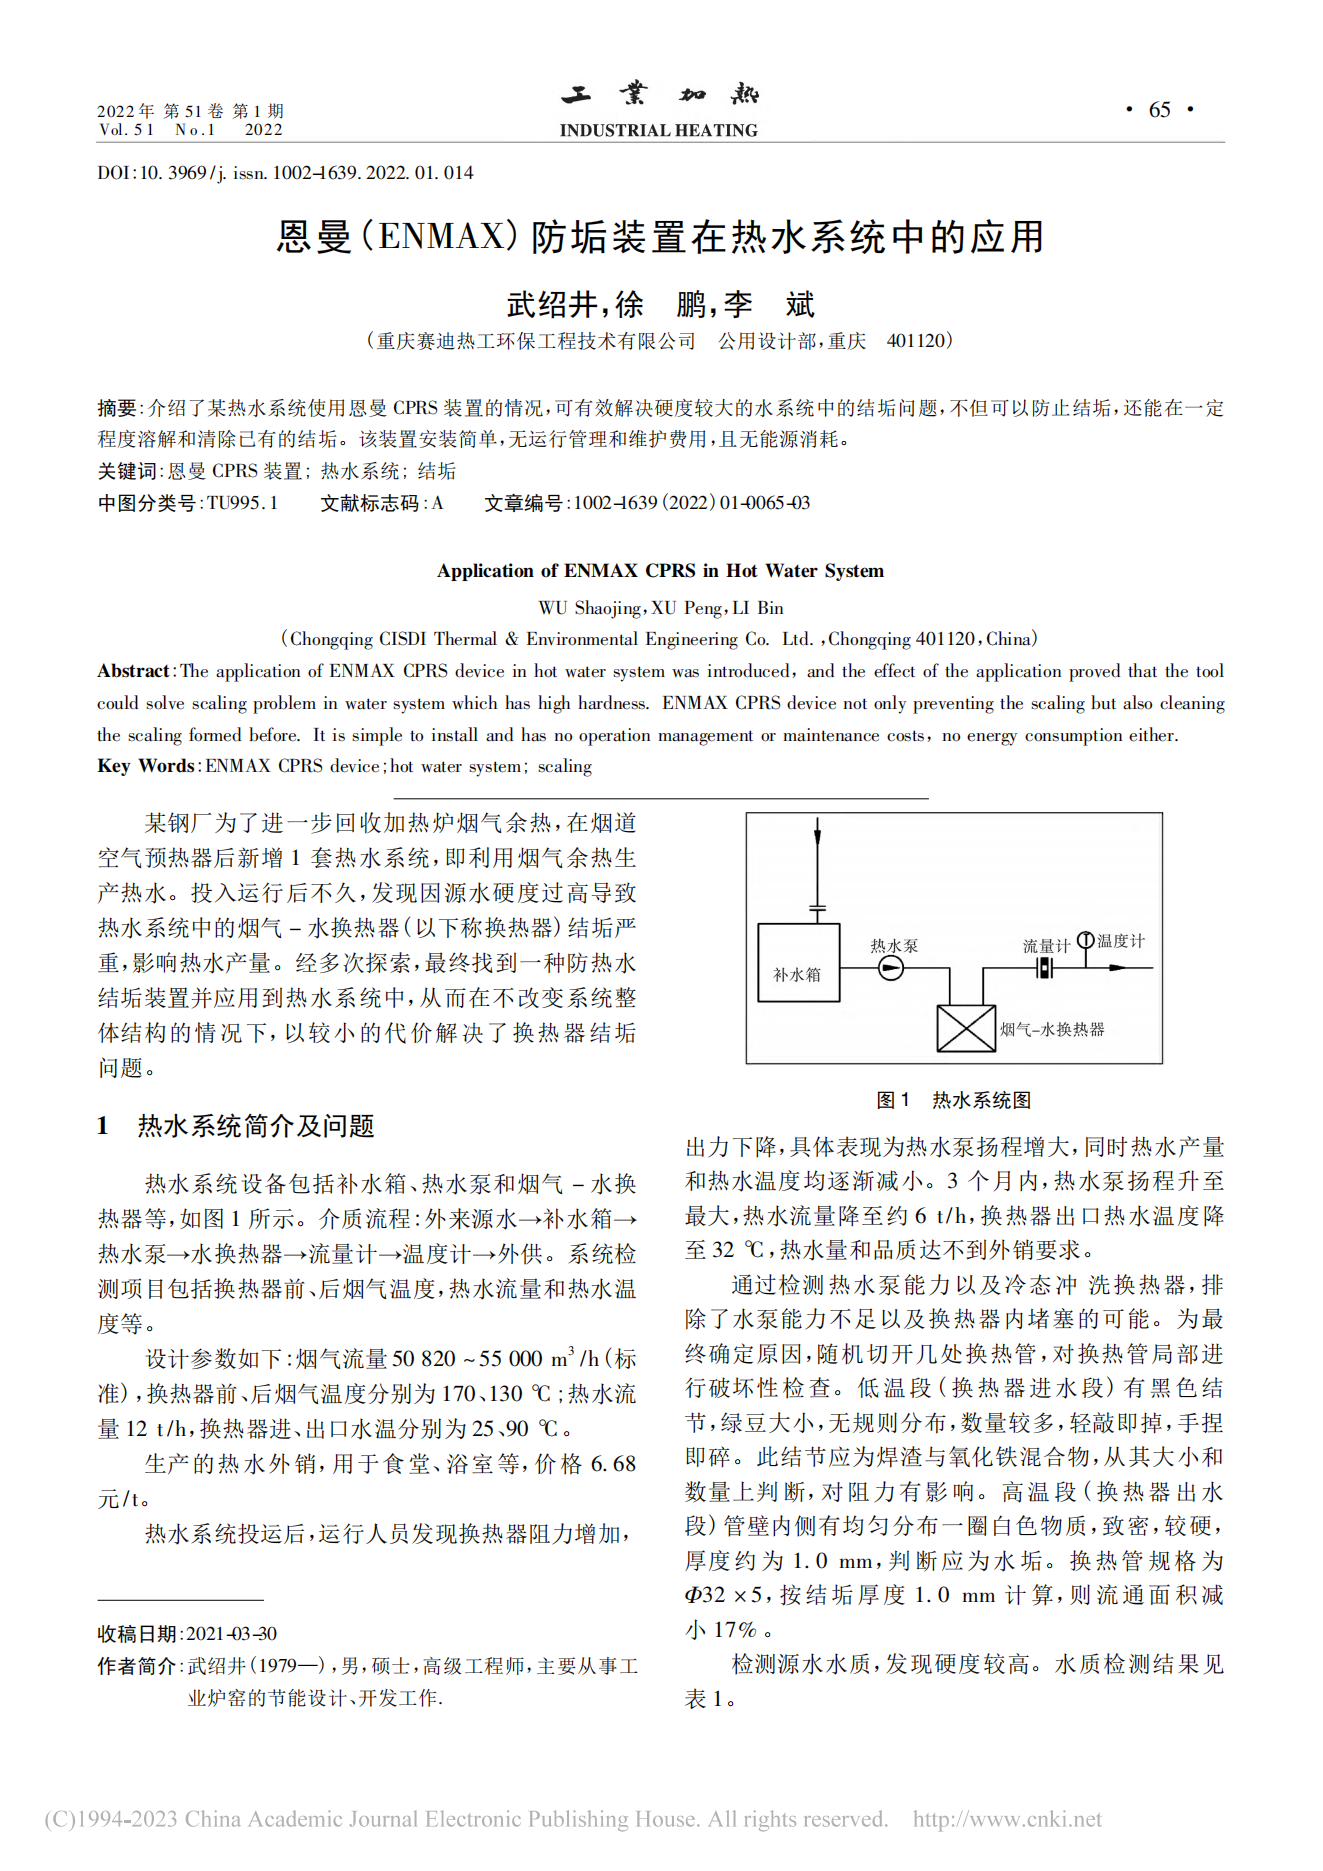 吕氏贵宾会(ENMAX)防垢装置在热水系统中的应用_武绍井(1)_00.png